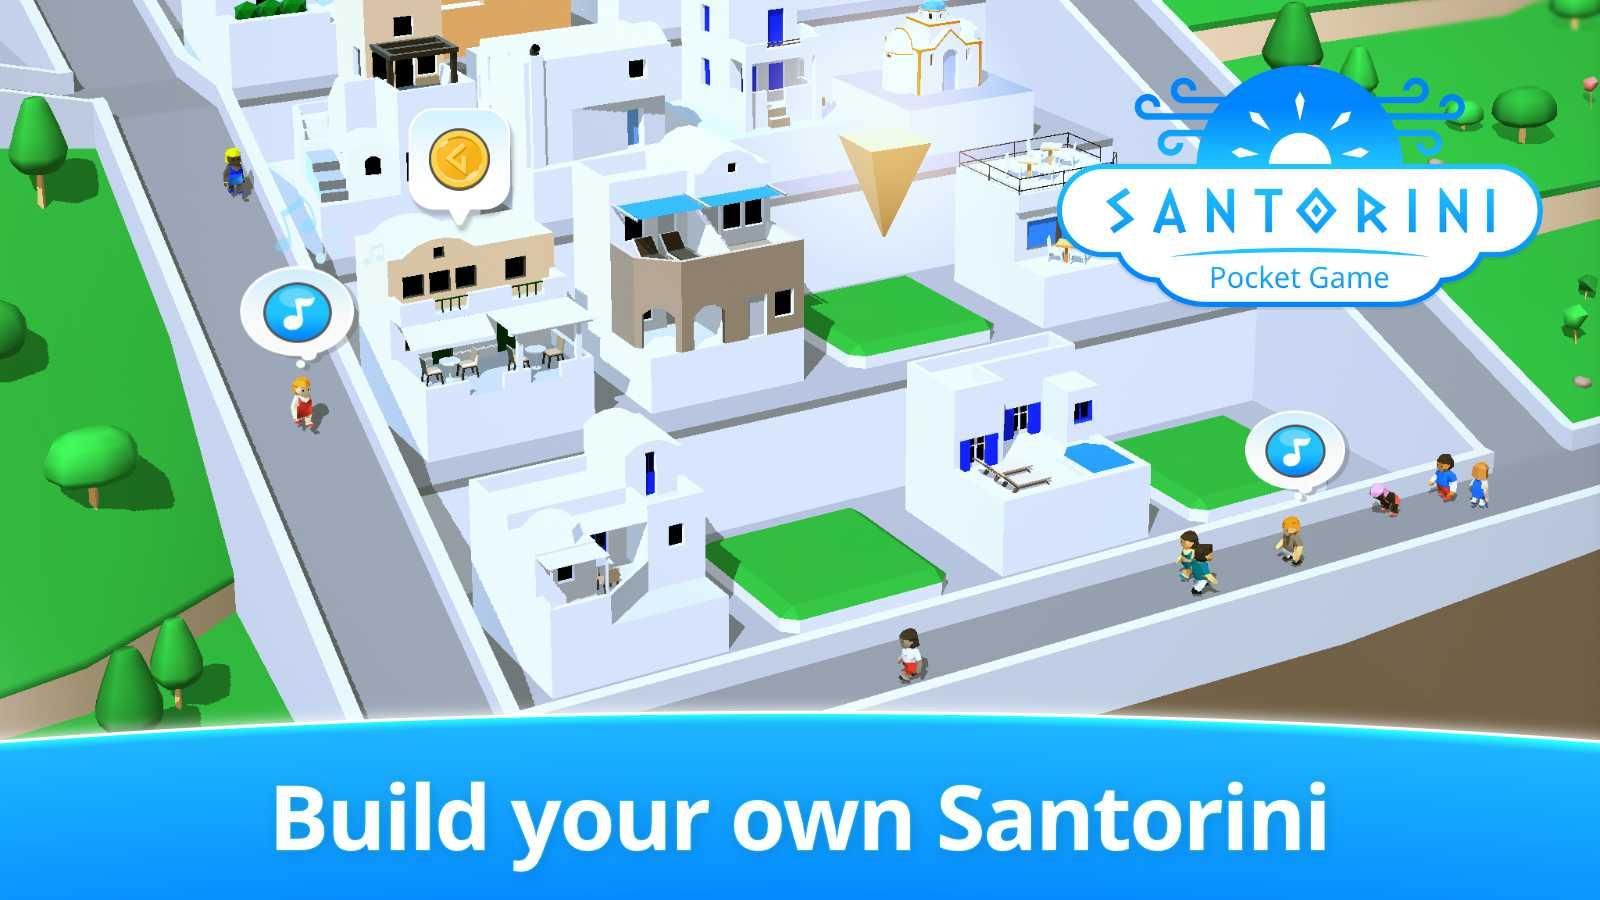 Santorini Pocket Game